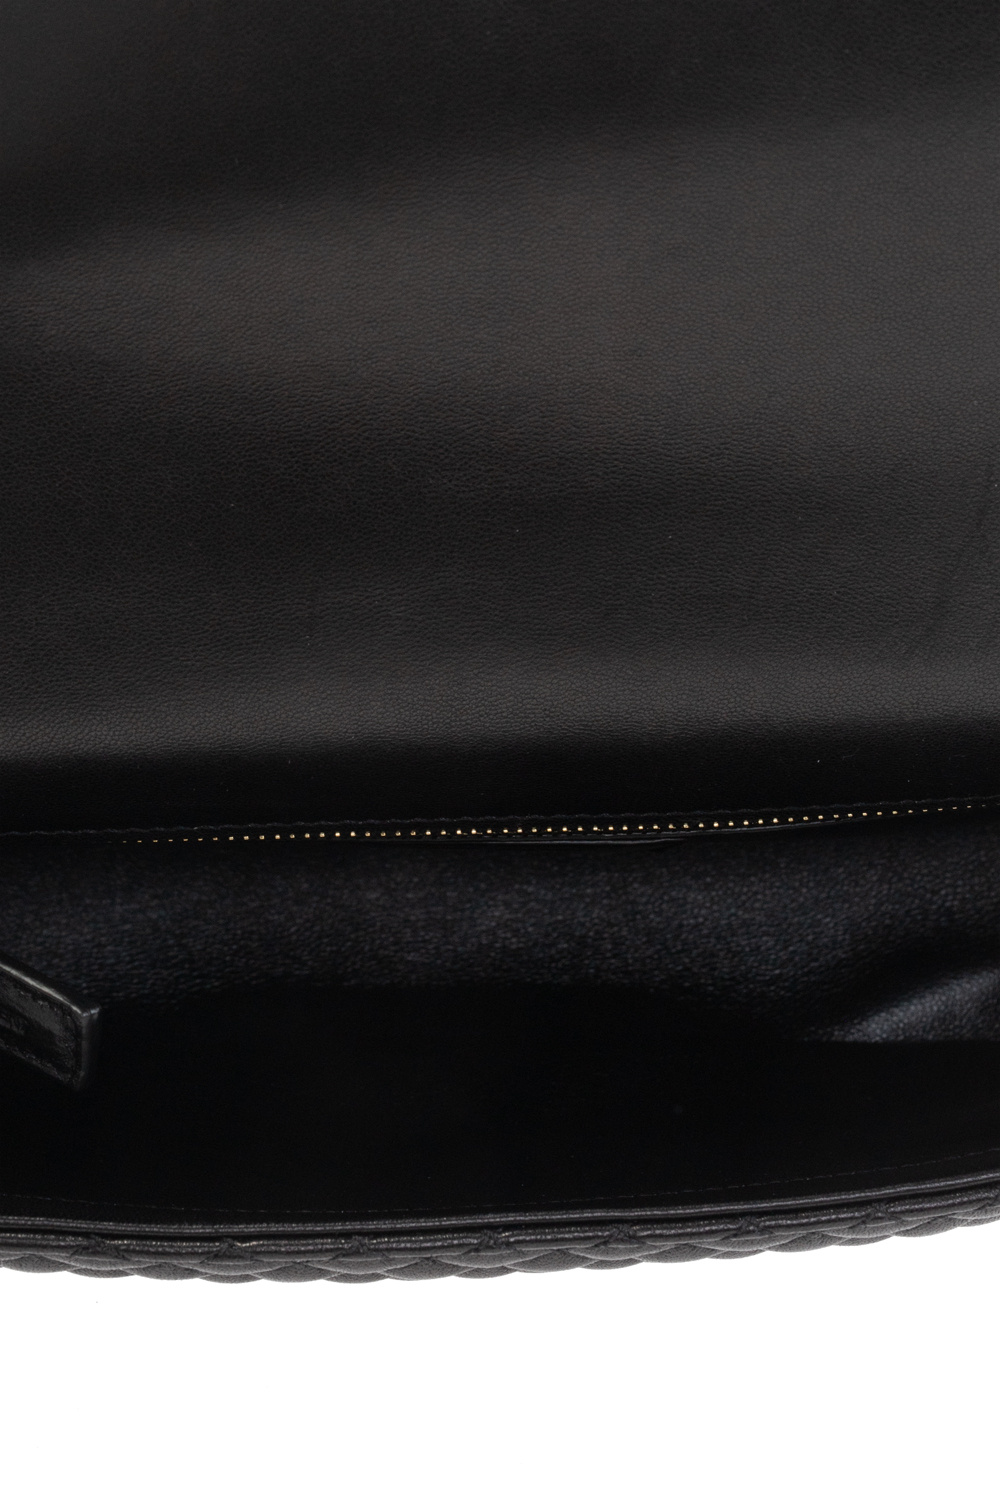 Pour La Victoire Black Leather Zipper Envelope Crossbody Bag 